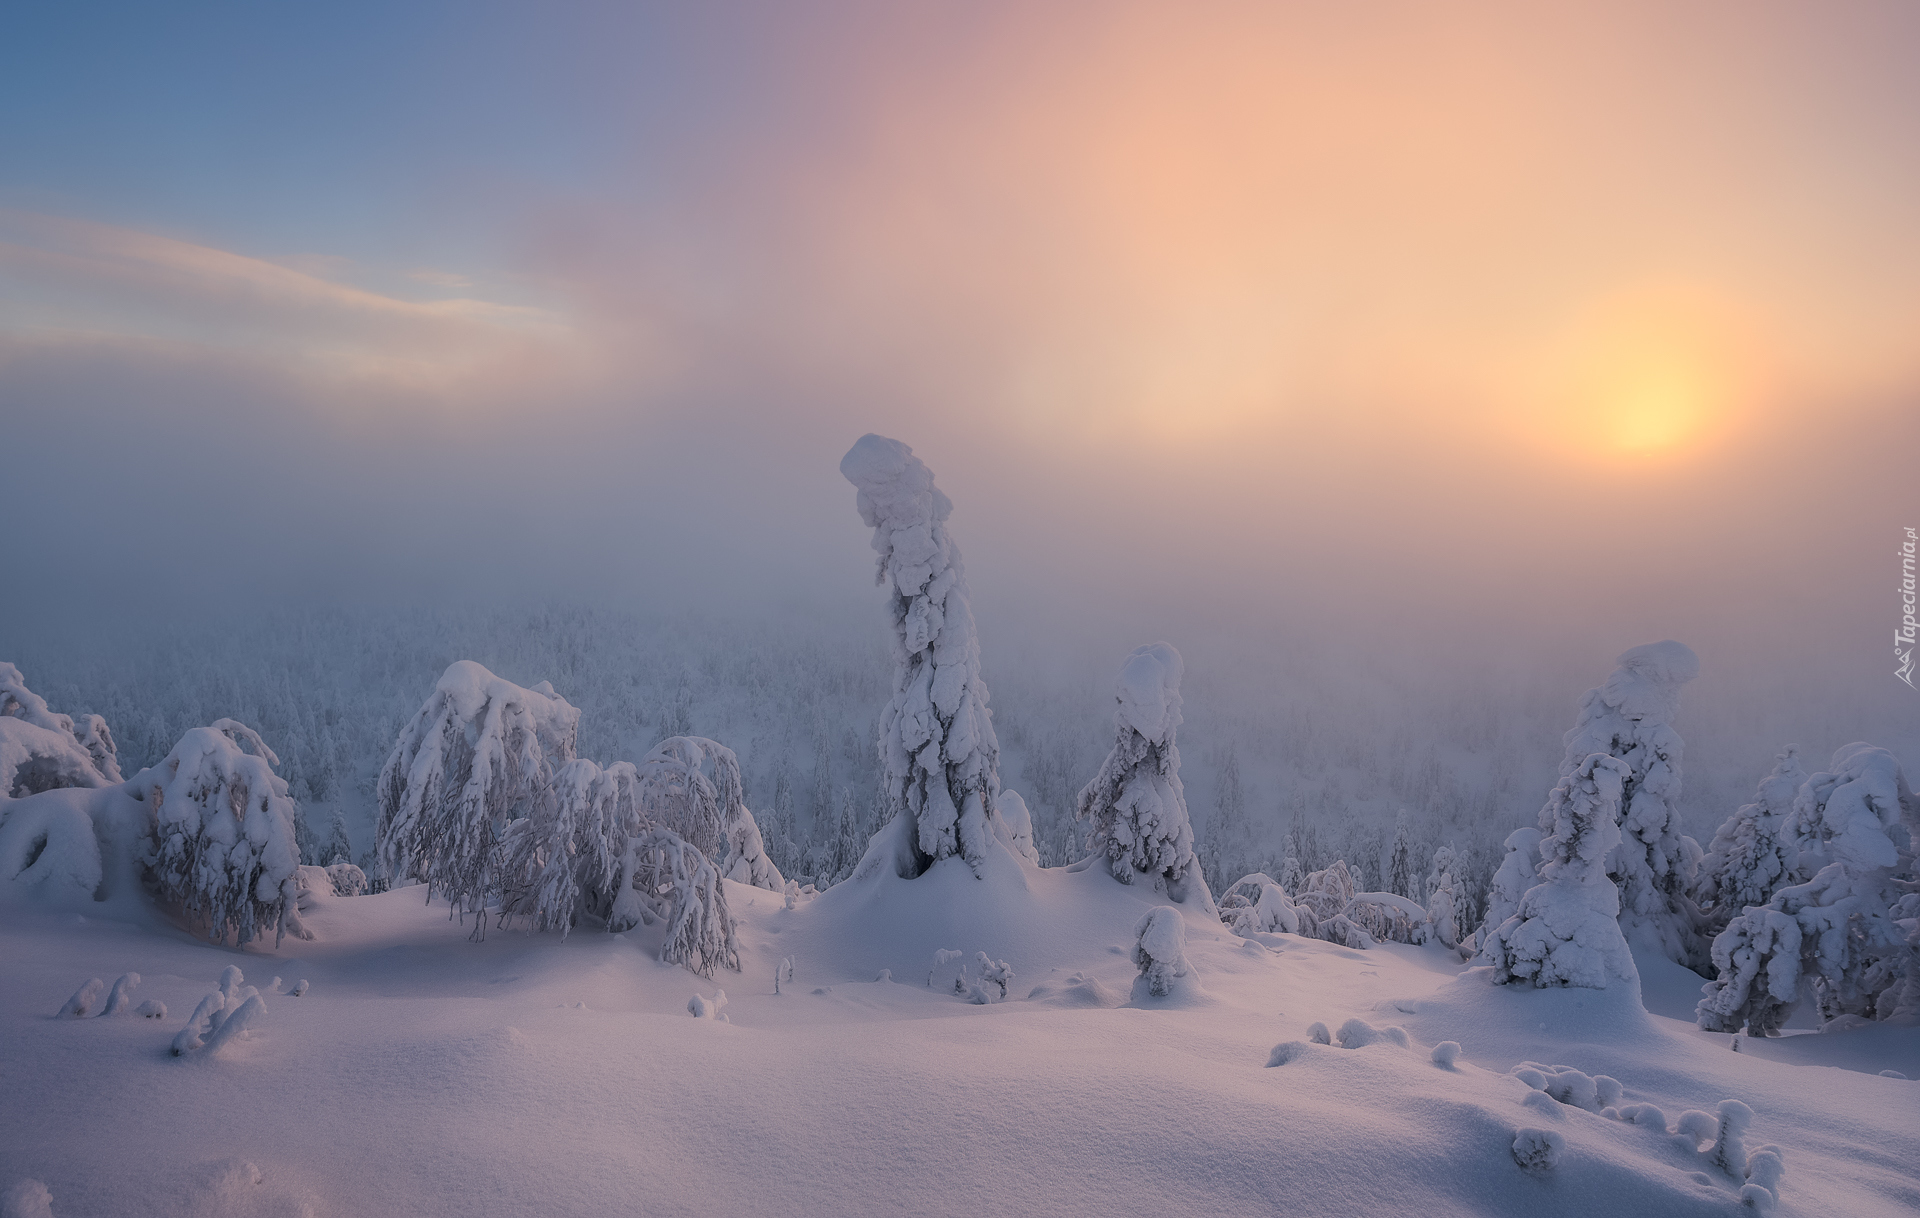 Zima, Drzewa, Mgła, Chmury, Wschód słońca